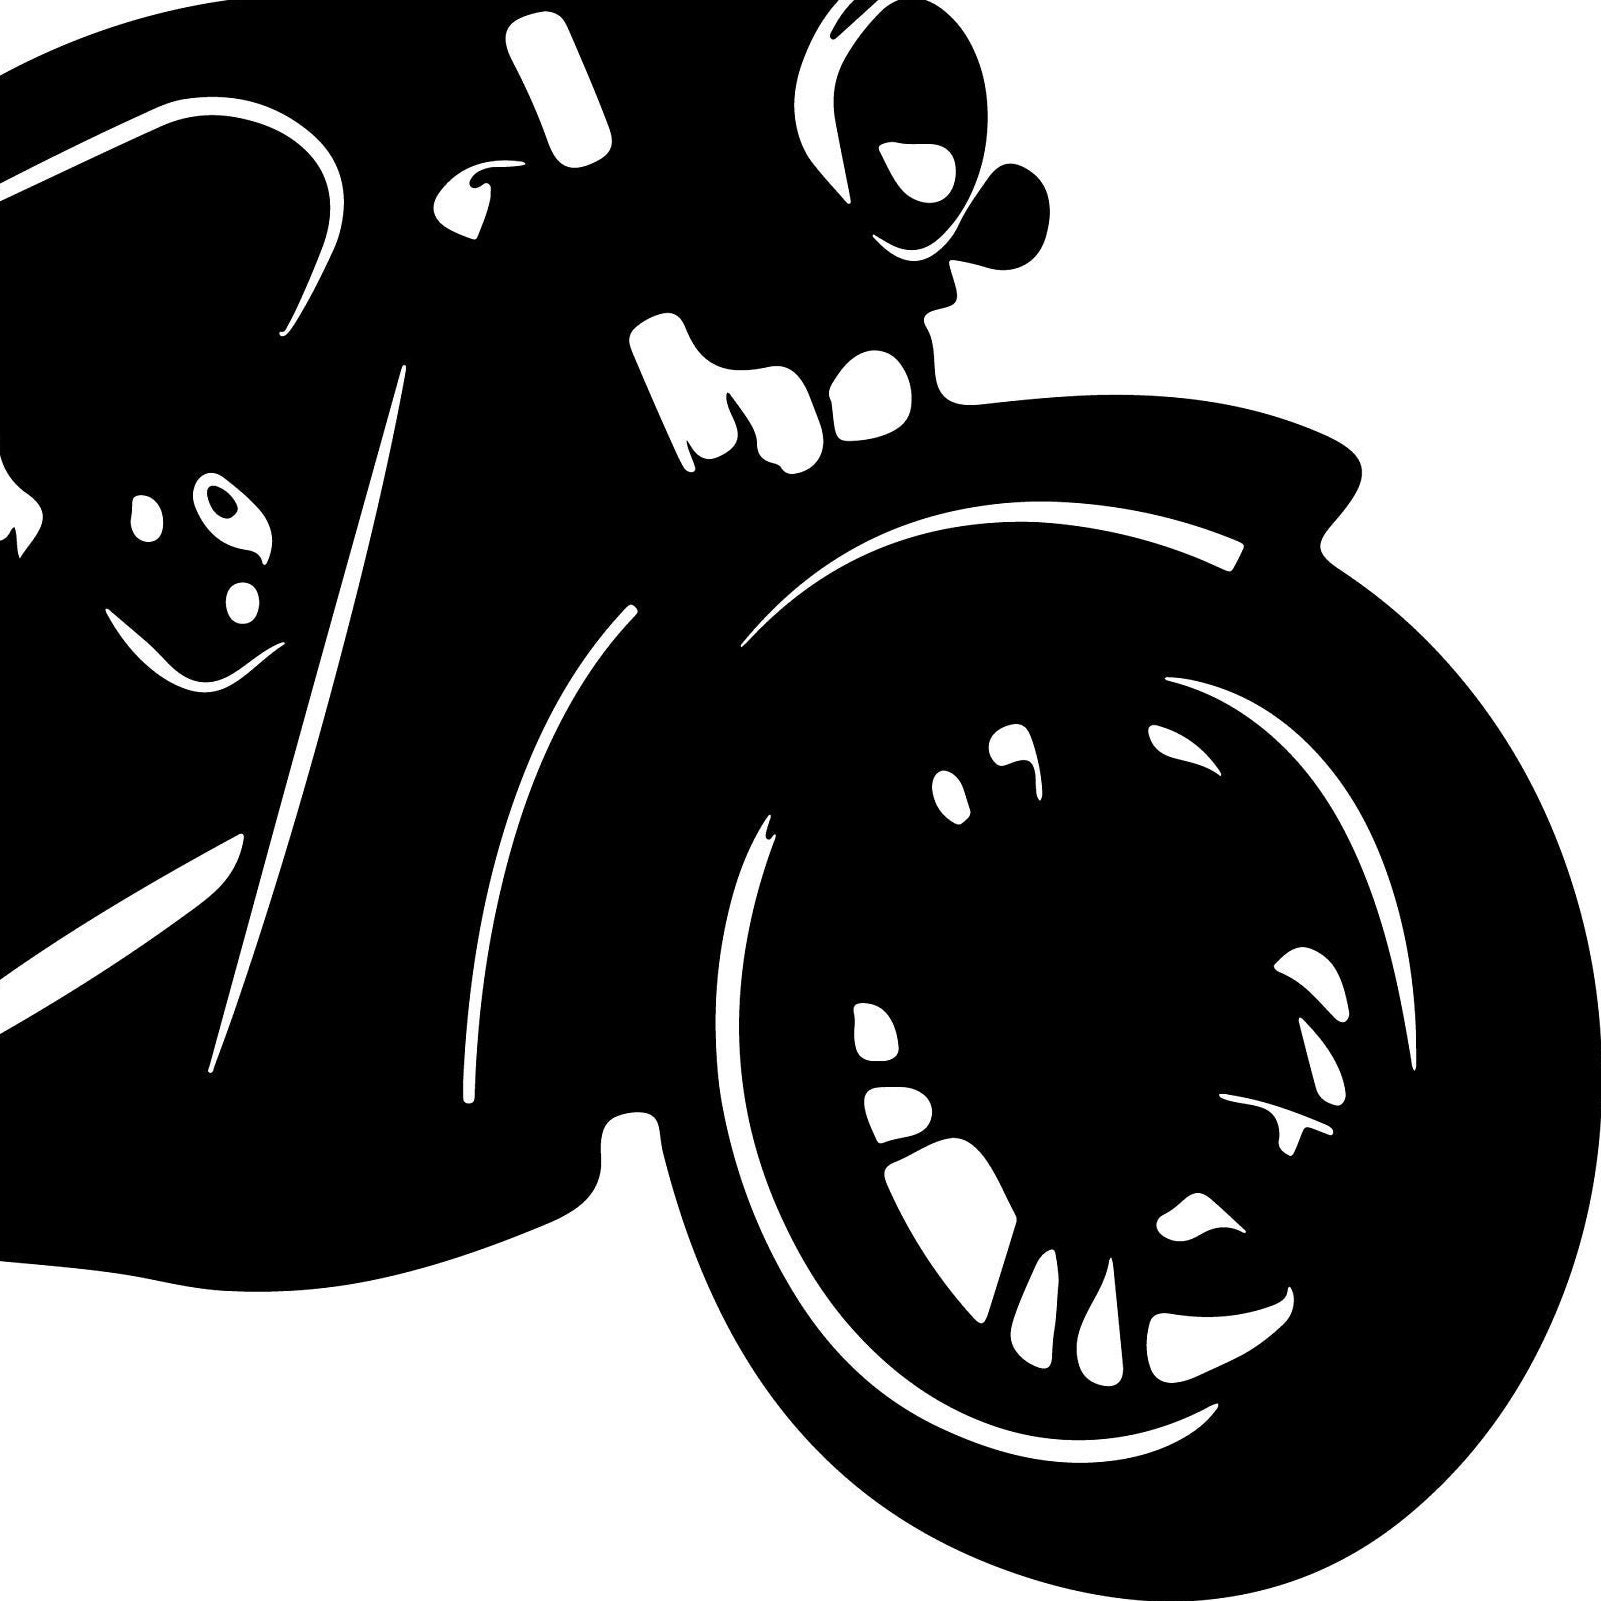 Indian Svg Motorbike Svg Indian Bike Svg Motorcycle Svg Etsy Canada